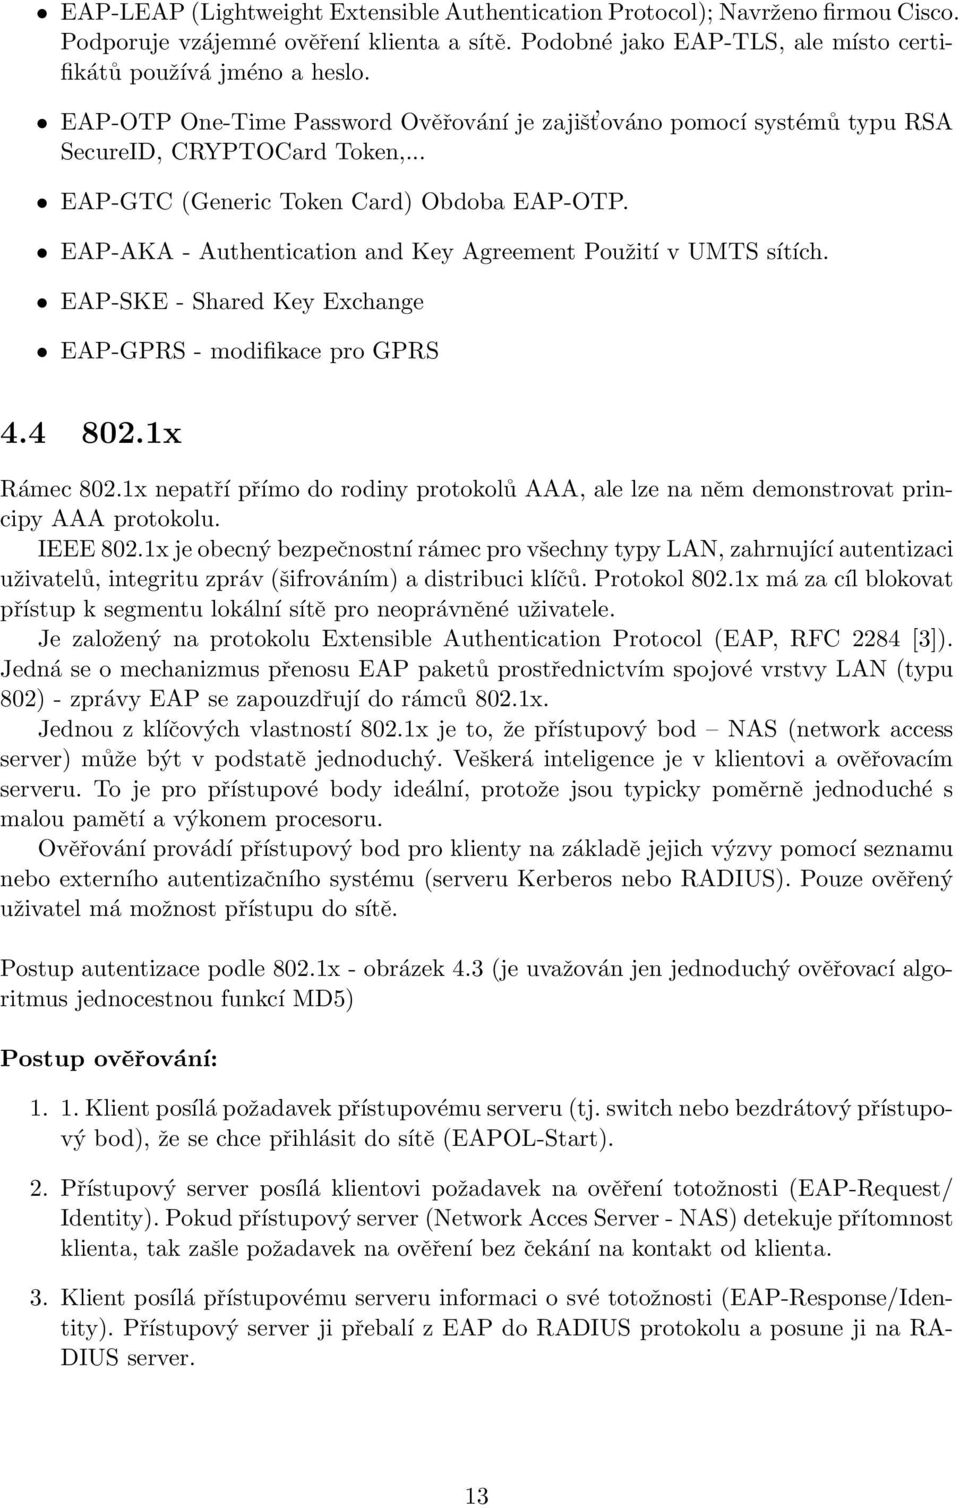 EAP-AKA - Authentication and Key Agreement Použití v UMTS sítích. EAP-SKE - Shared Key Exchange EAP-GPRS - modifikace pro GPRS 4.4 802.1x Rámec 802.